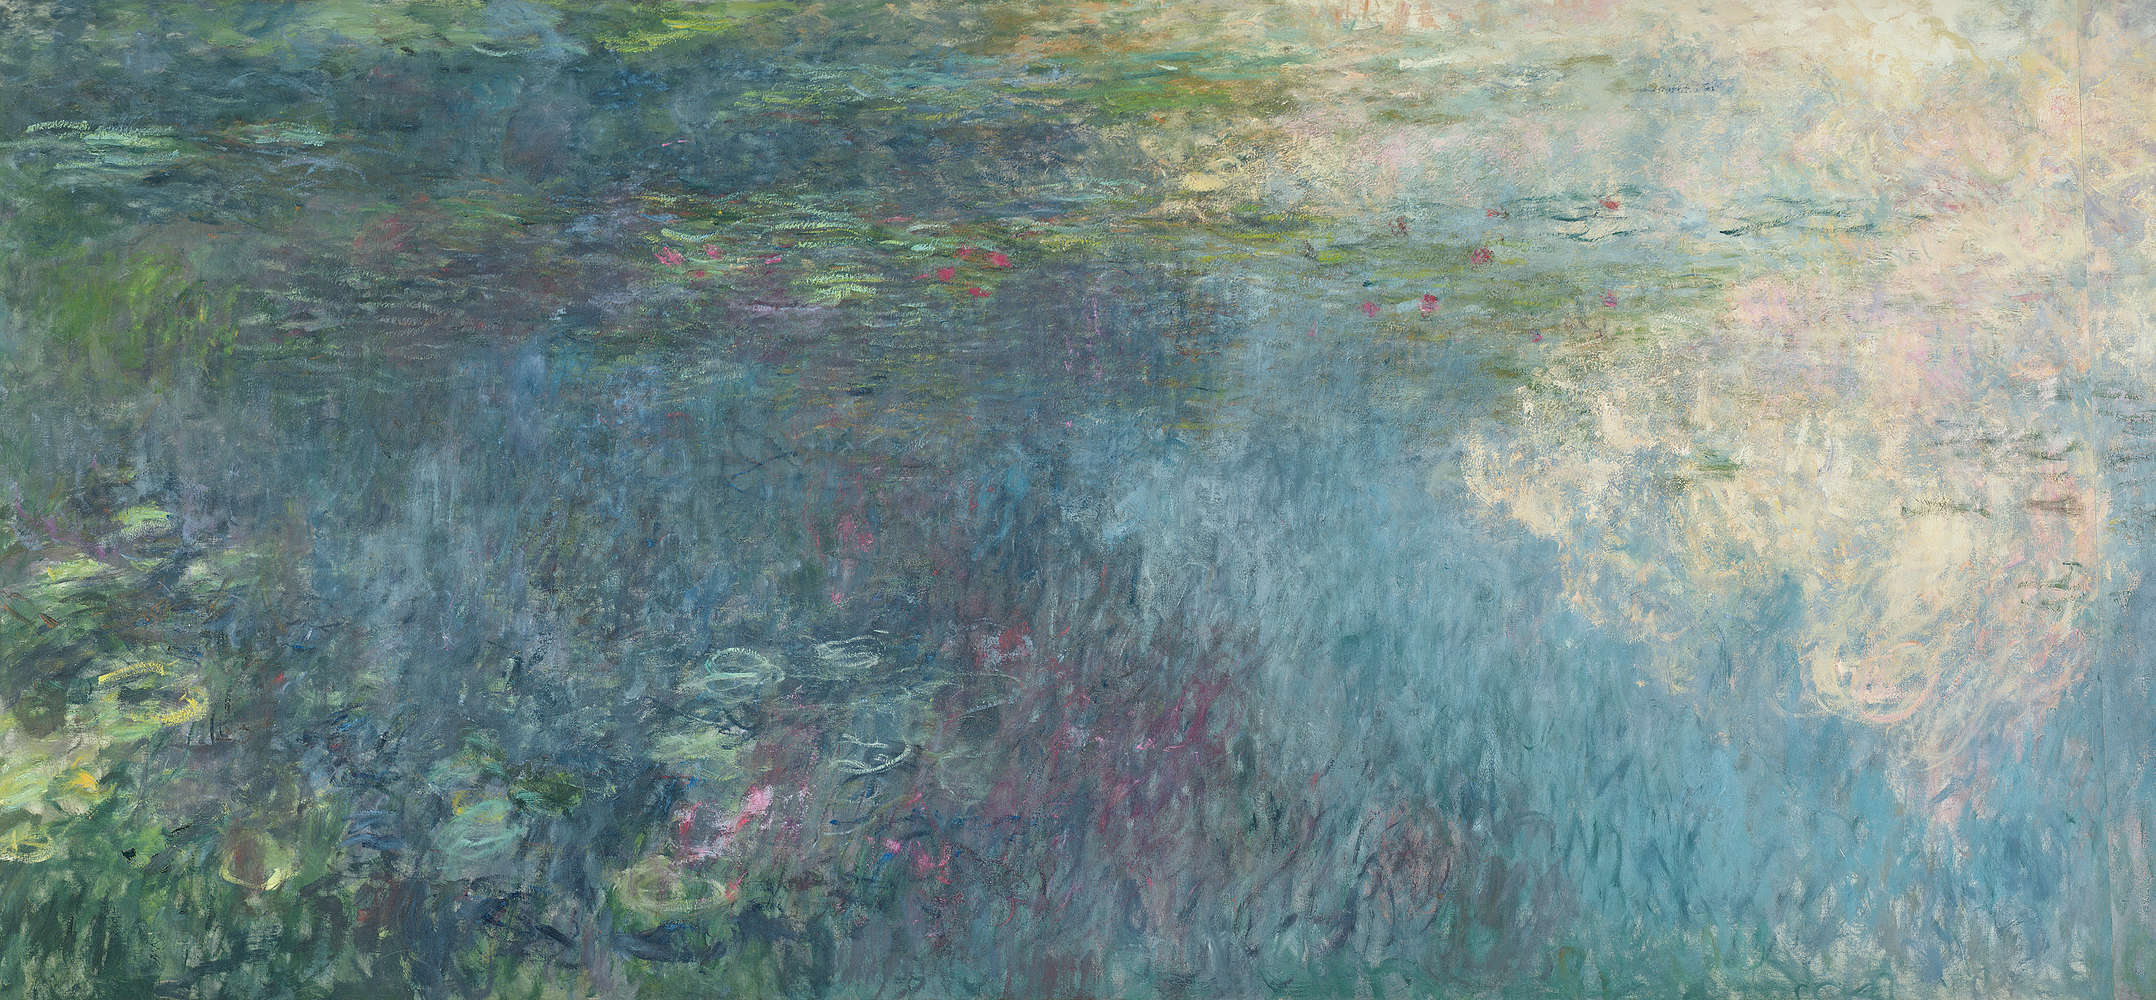             Il murale "Ninfee e nuvole" di Claude Monet
        